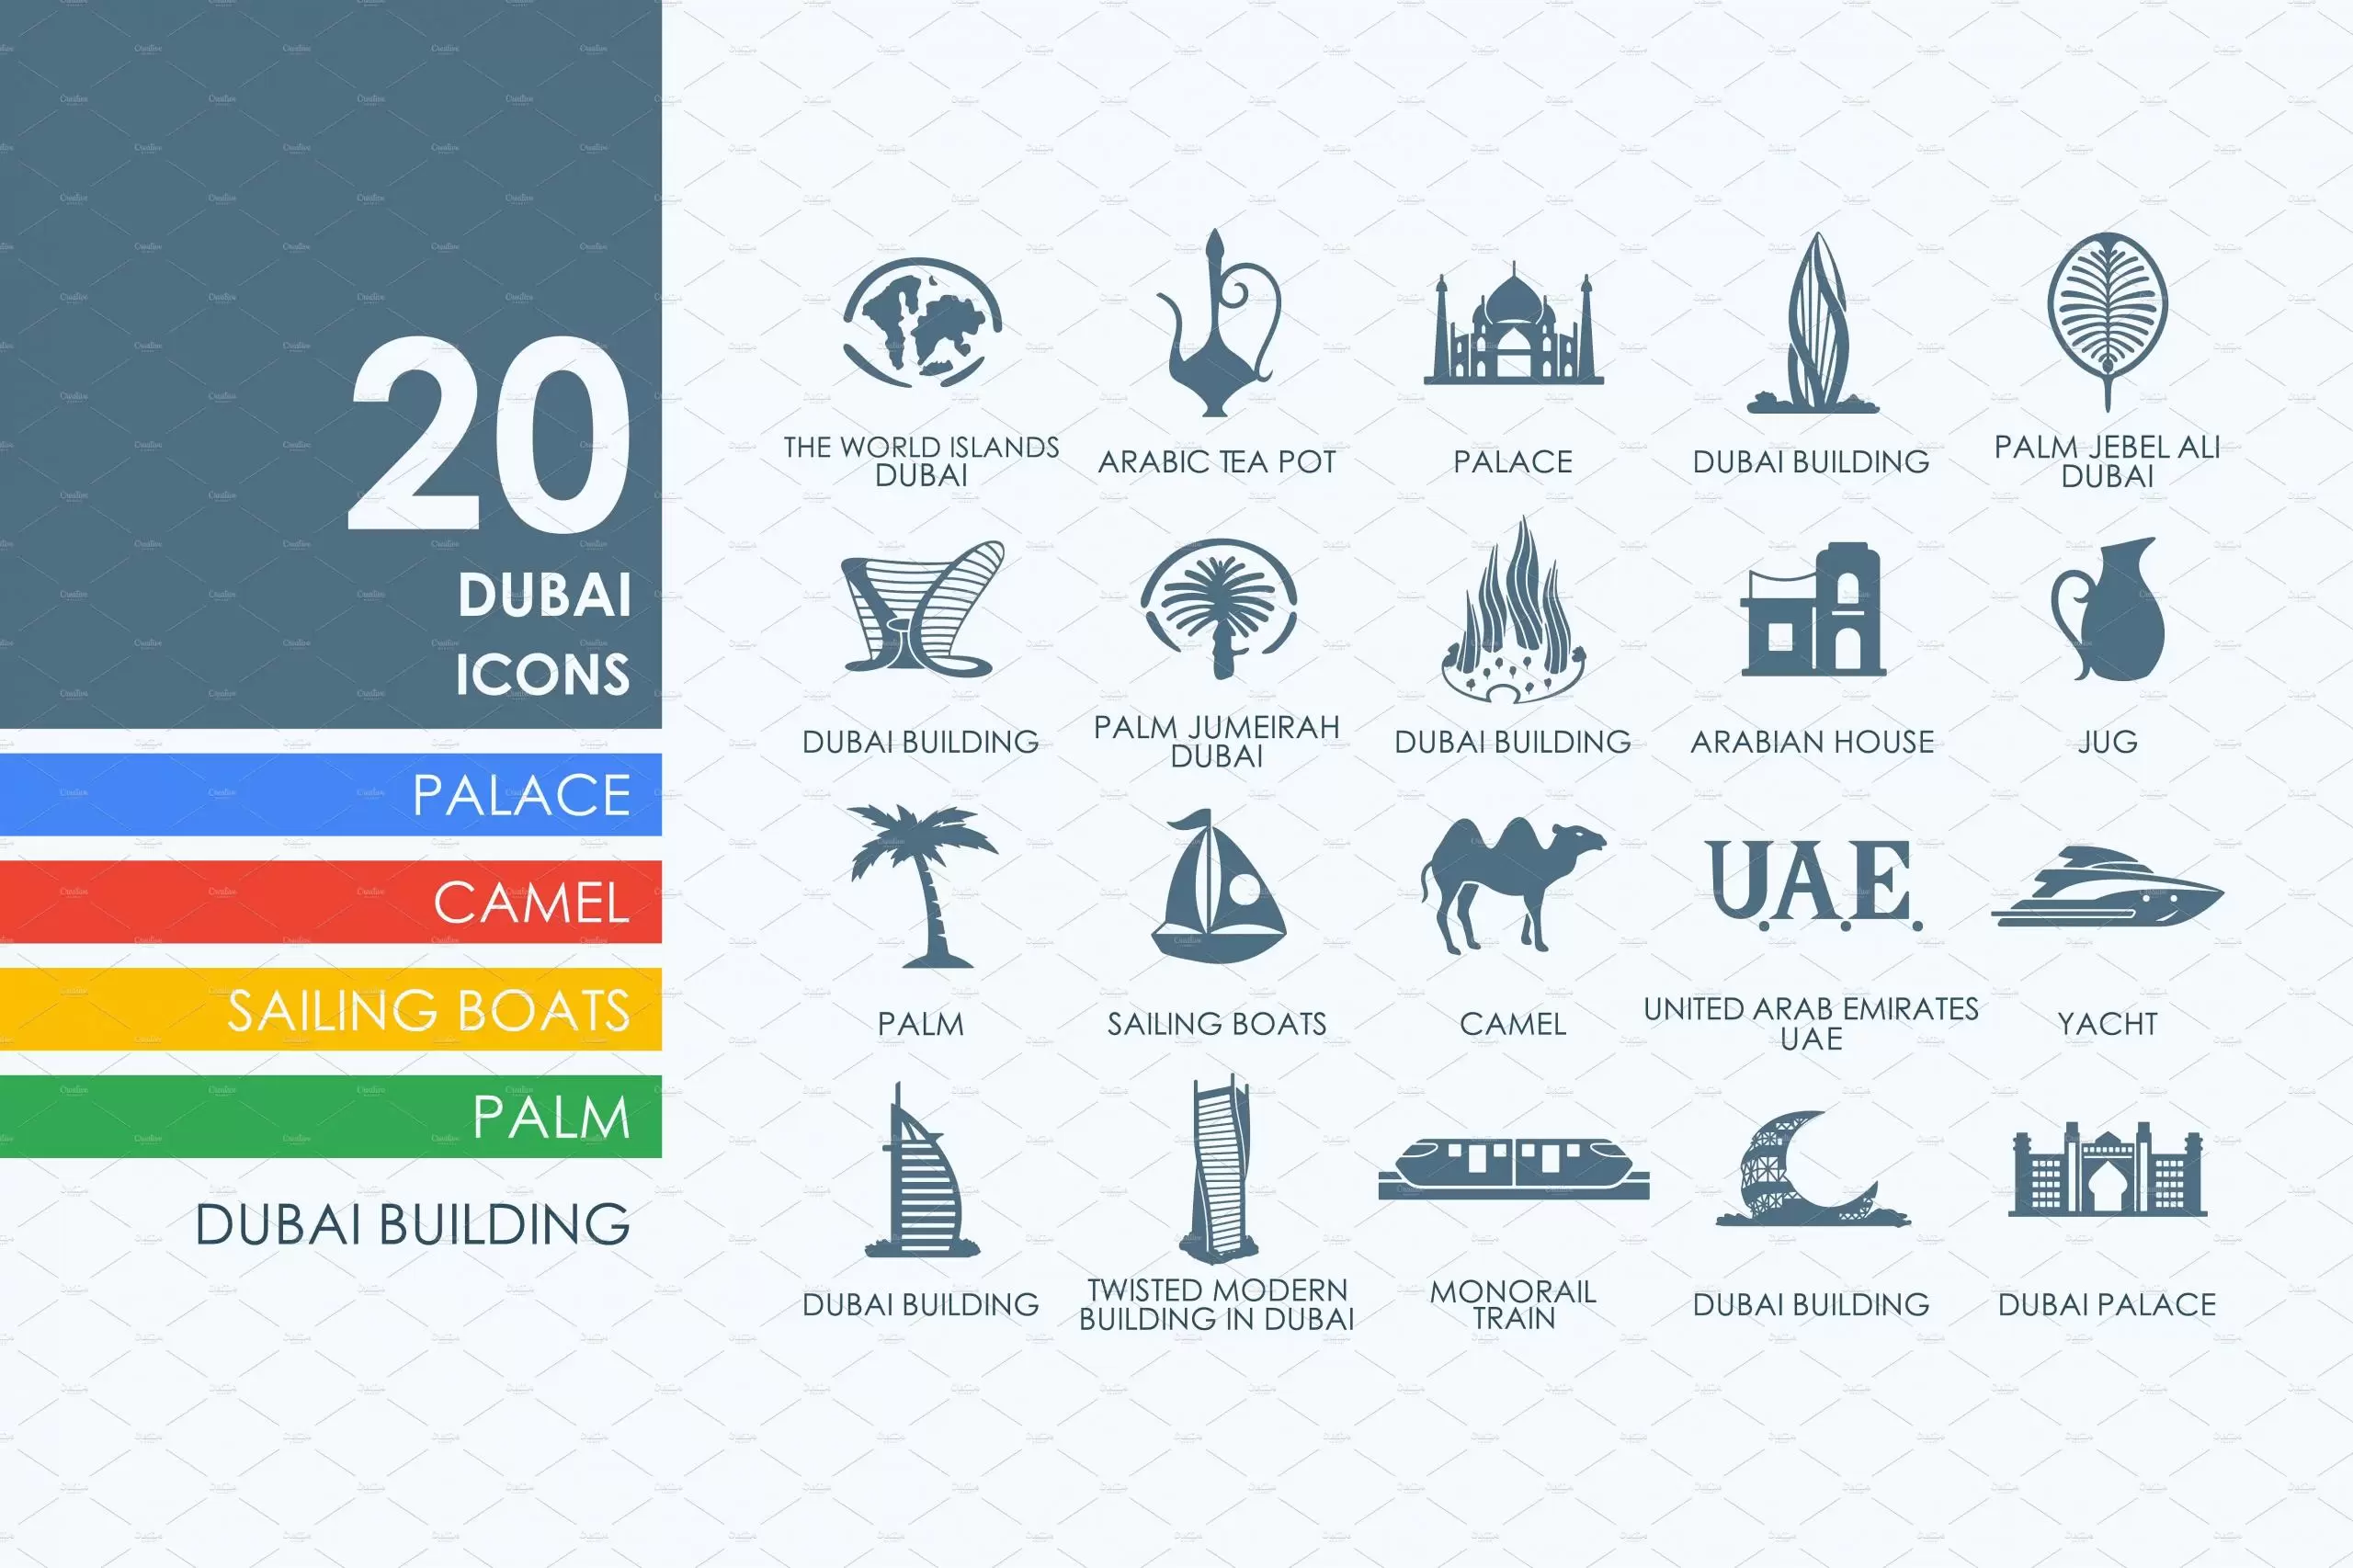 迪拜图标素材 20 Dubai icons插图